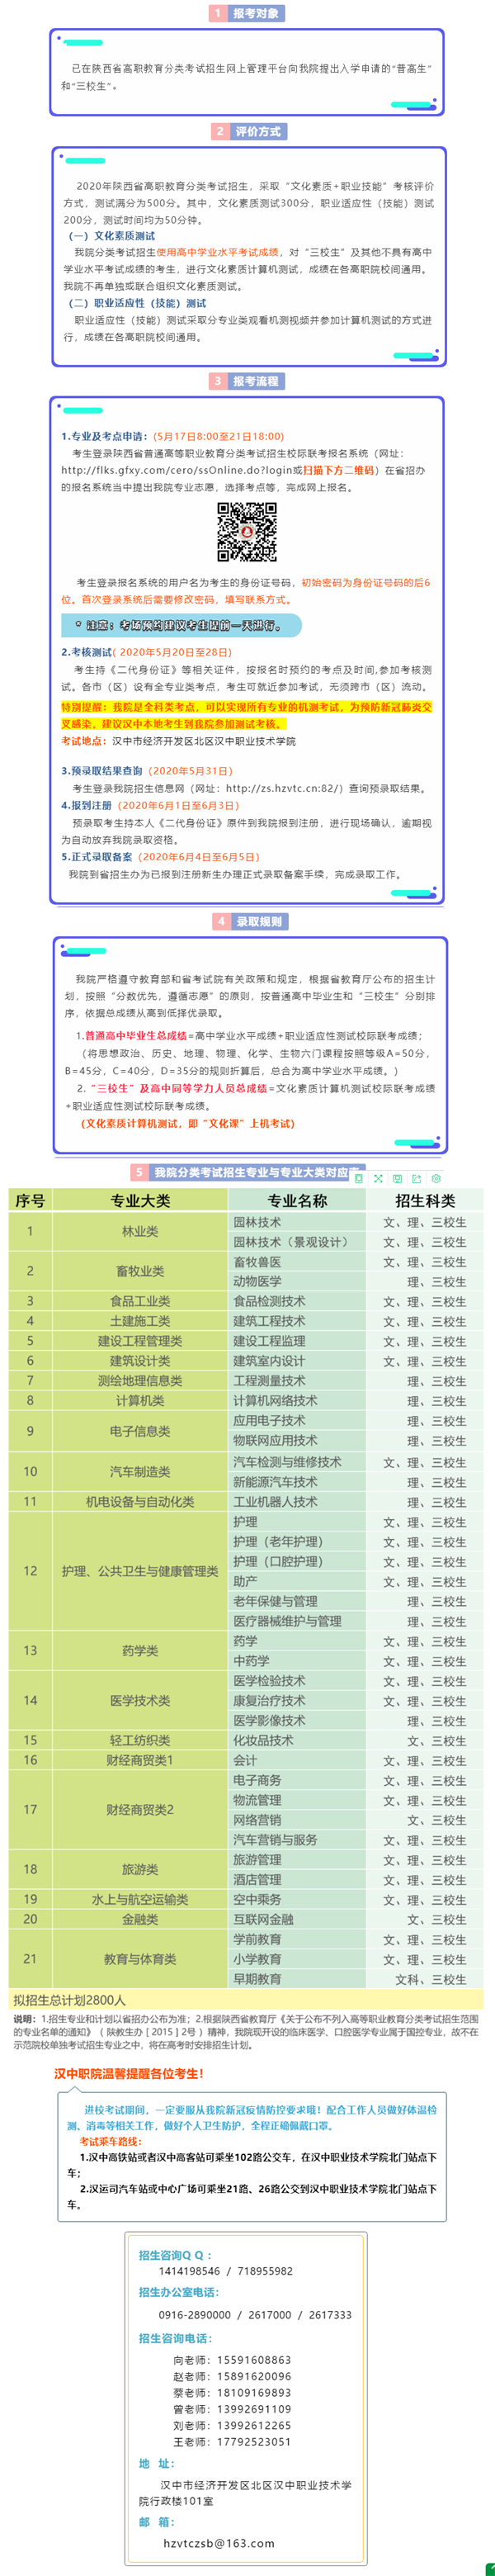 2020汉中职业技术学院分类考试招生简章